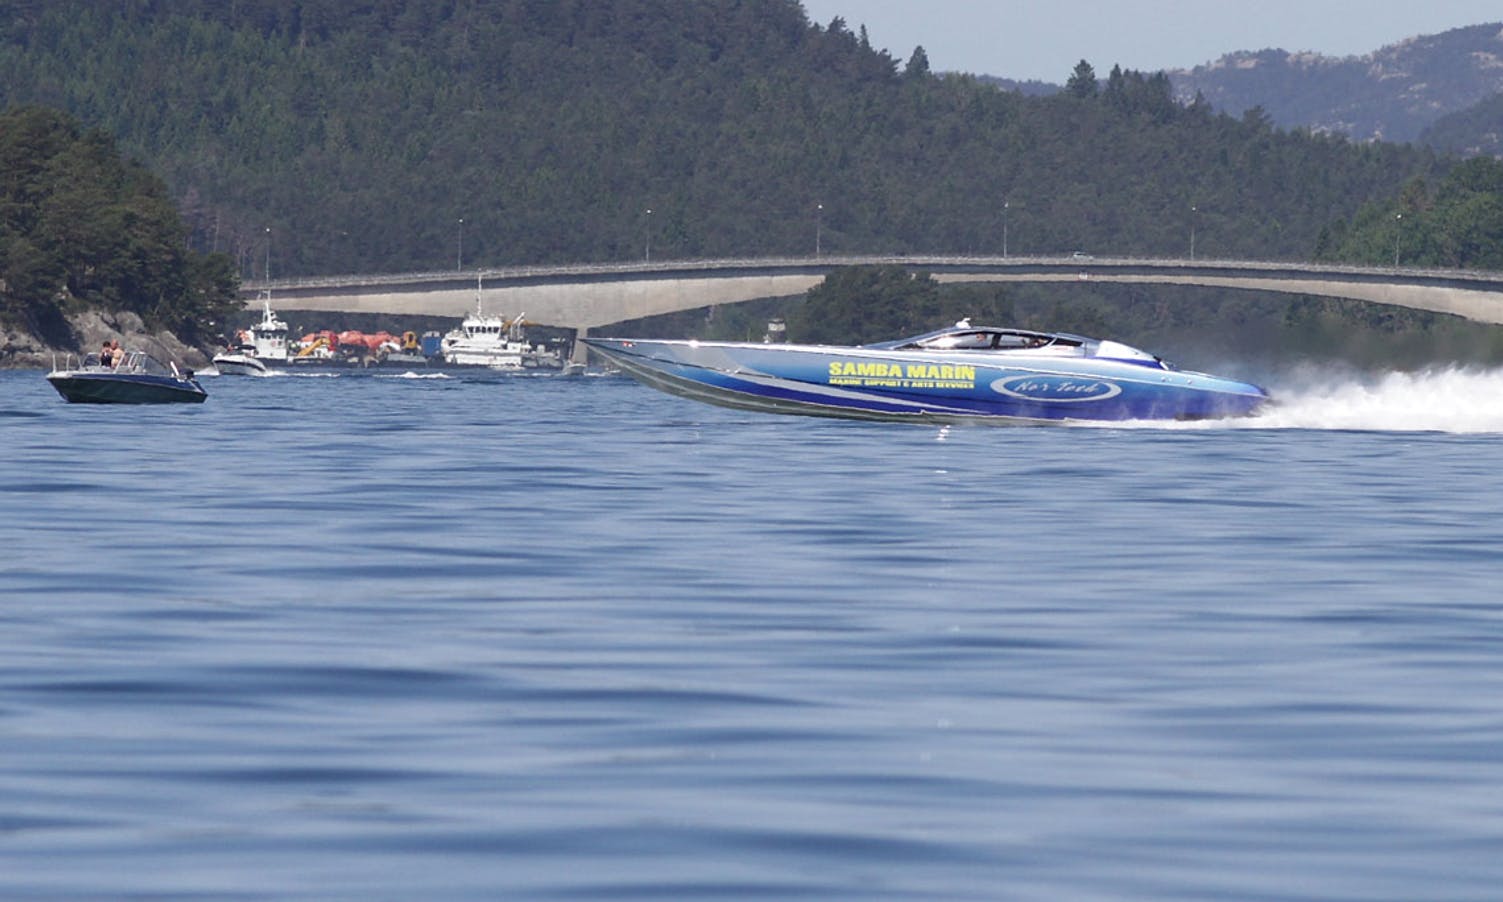 Dei andre la seg i ro mens Arefjord tok nokre drag med rekordbåten. (Foto: Kjetil Vasby Bruarøy)